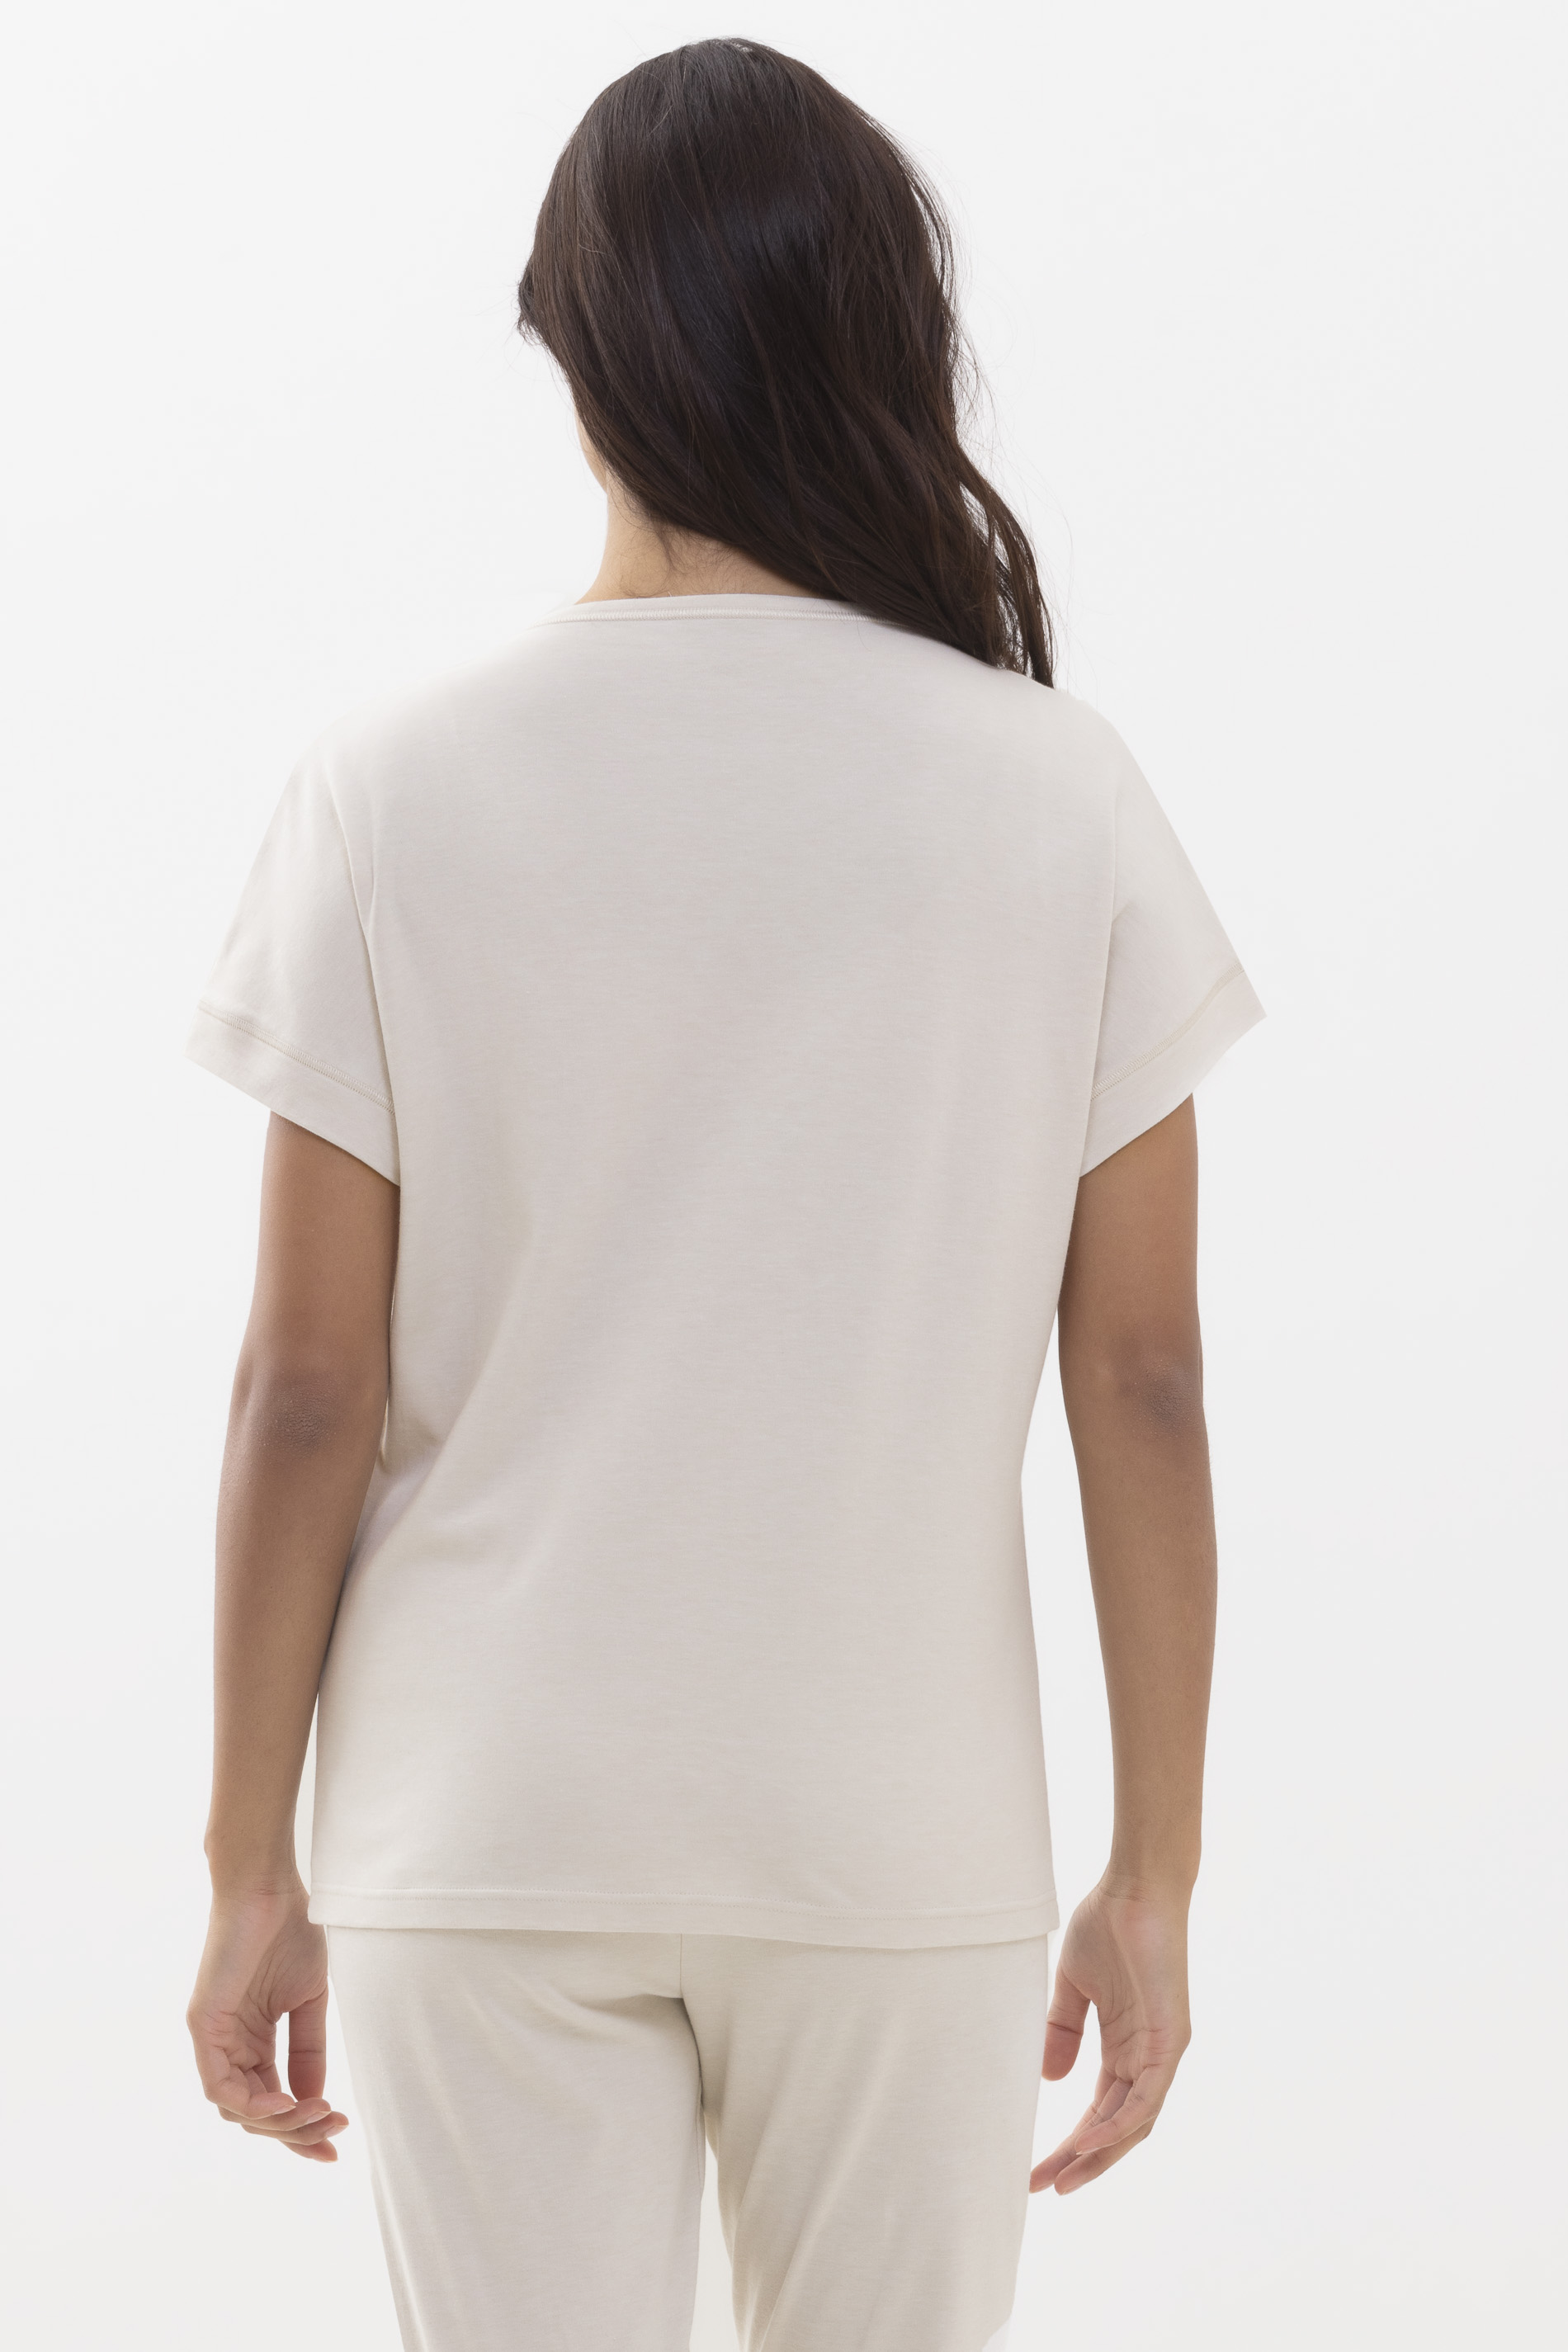 Shirt mit 1/2-Ärmel Natural Serie N8TEX 2.0 Rückansicht | mey®